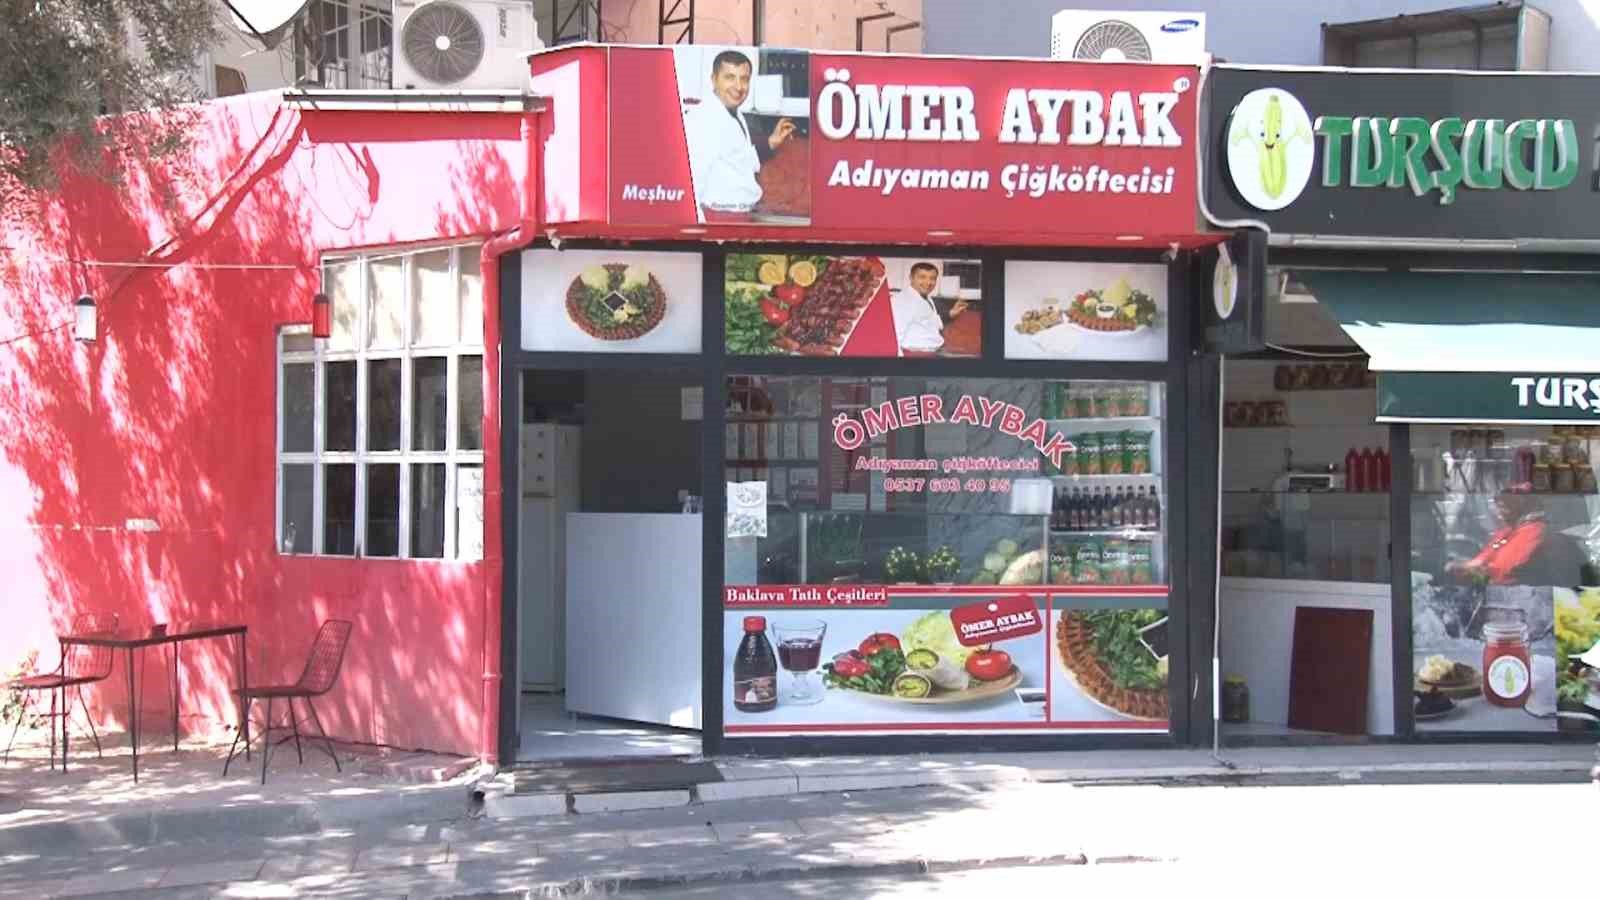 Bursa’da dükkana giren hırsız cüzdanı çalıp kayıplara çalıştı